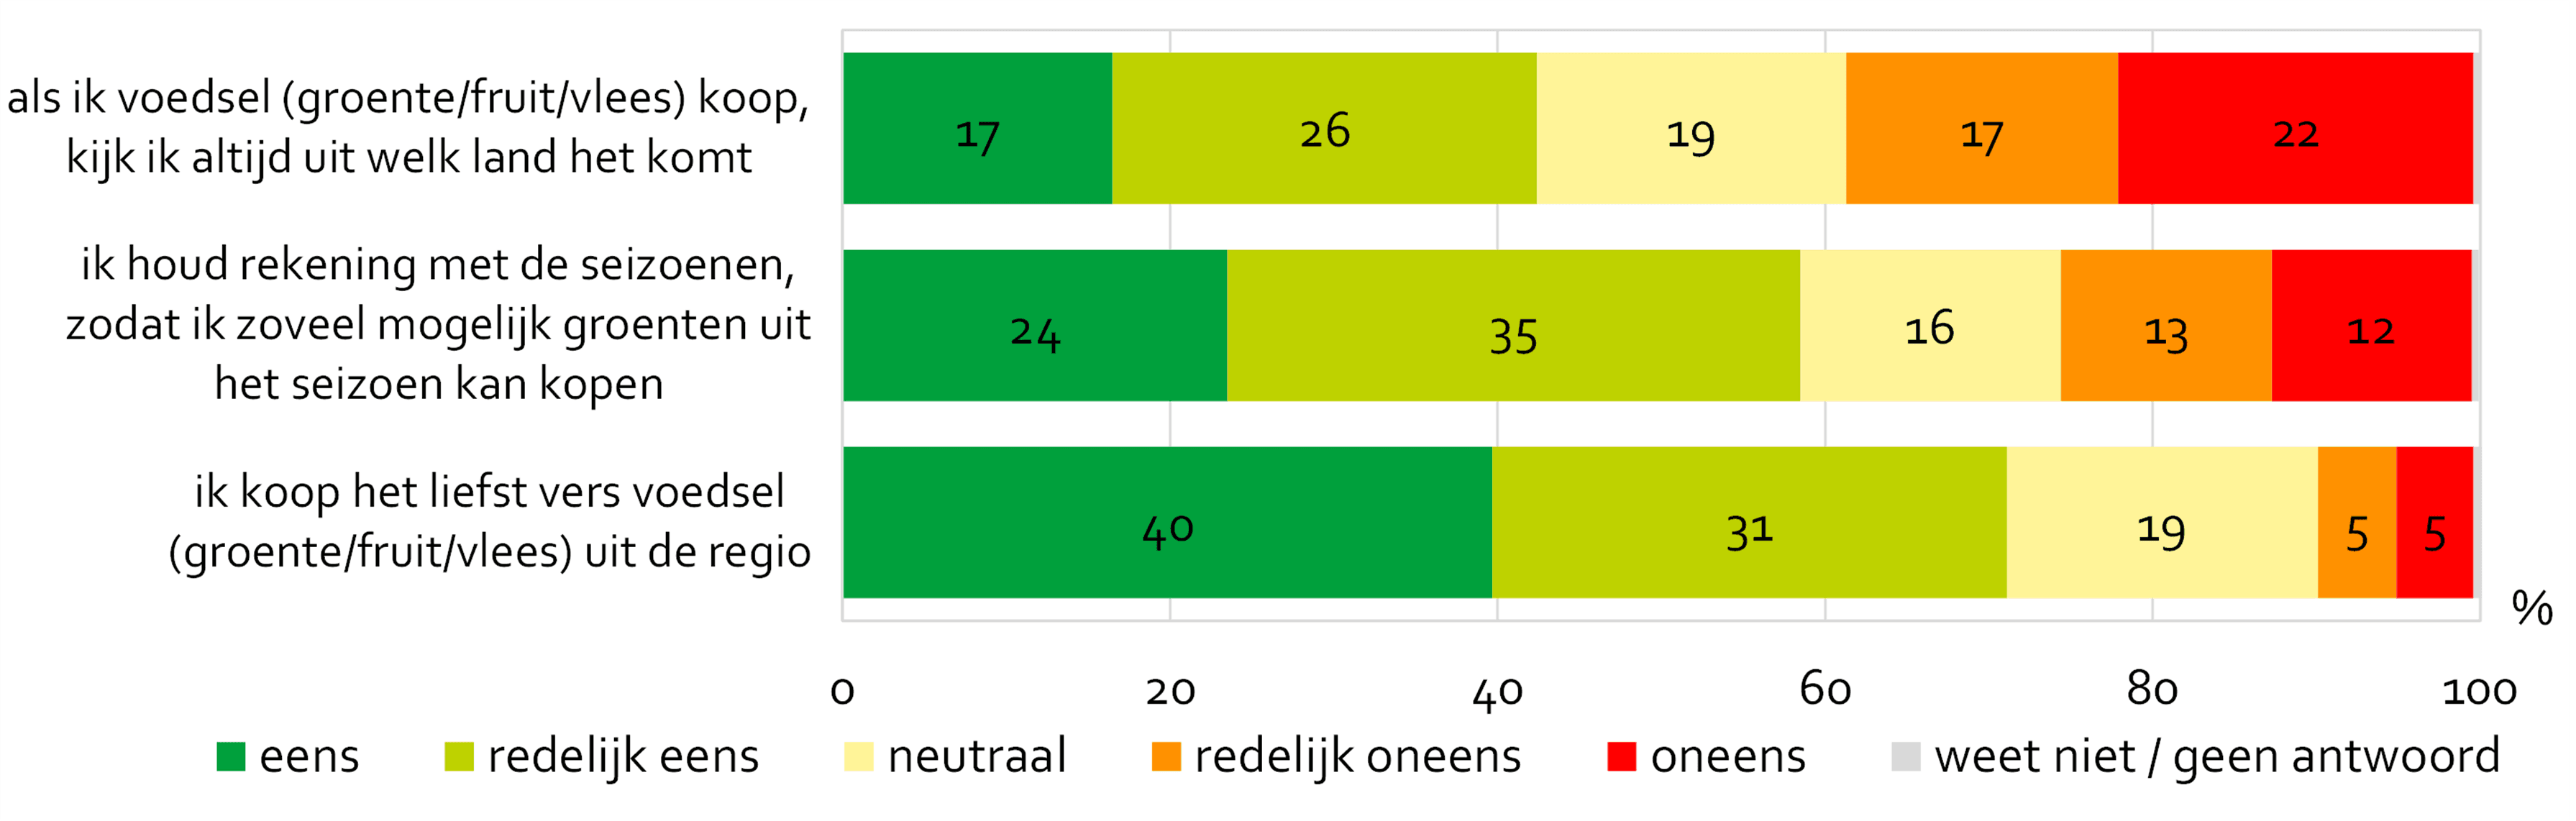 Mening van Amsterdammers over het kopen van voedsel uit de regio of uit het seizoen. 43% geeft aan te kijken naar het land van herkomst. 59% geeft aan rekening te houden met seizoenen en 71% geeft aan het liefst vers voedsel uit de regio te kopen.